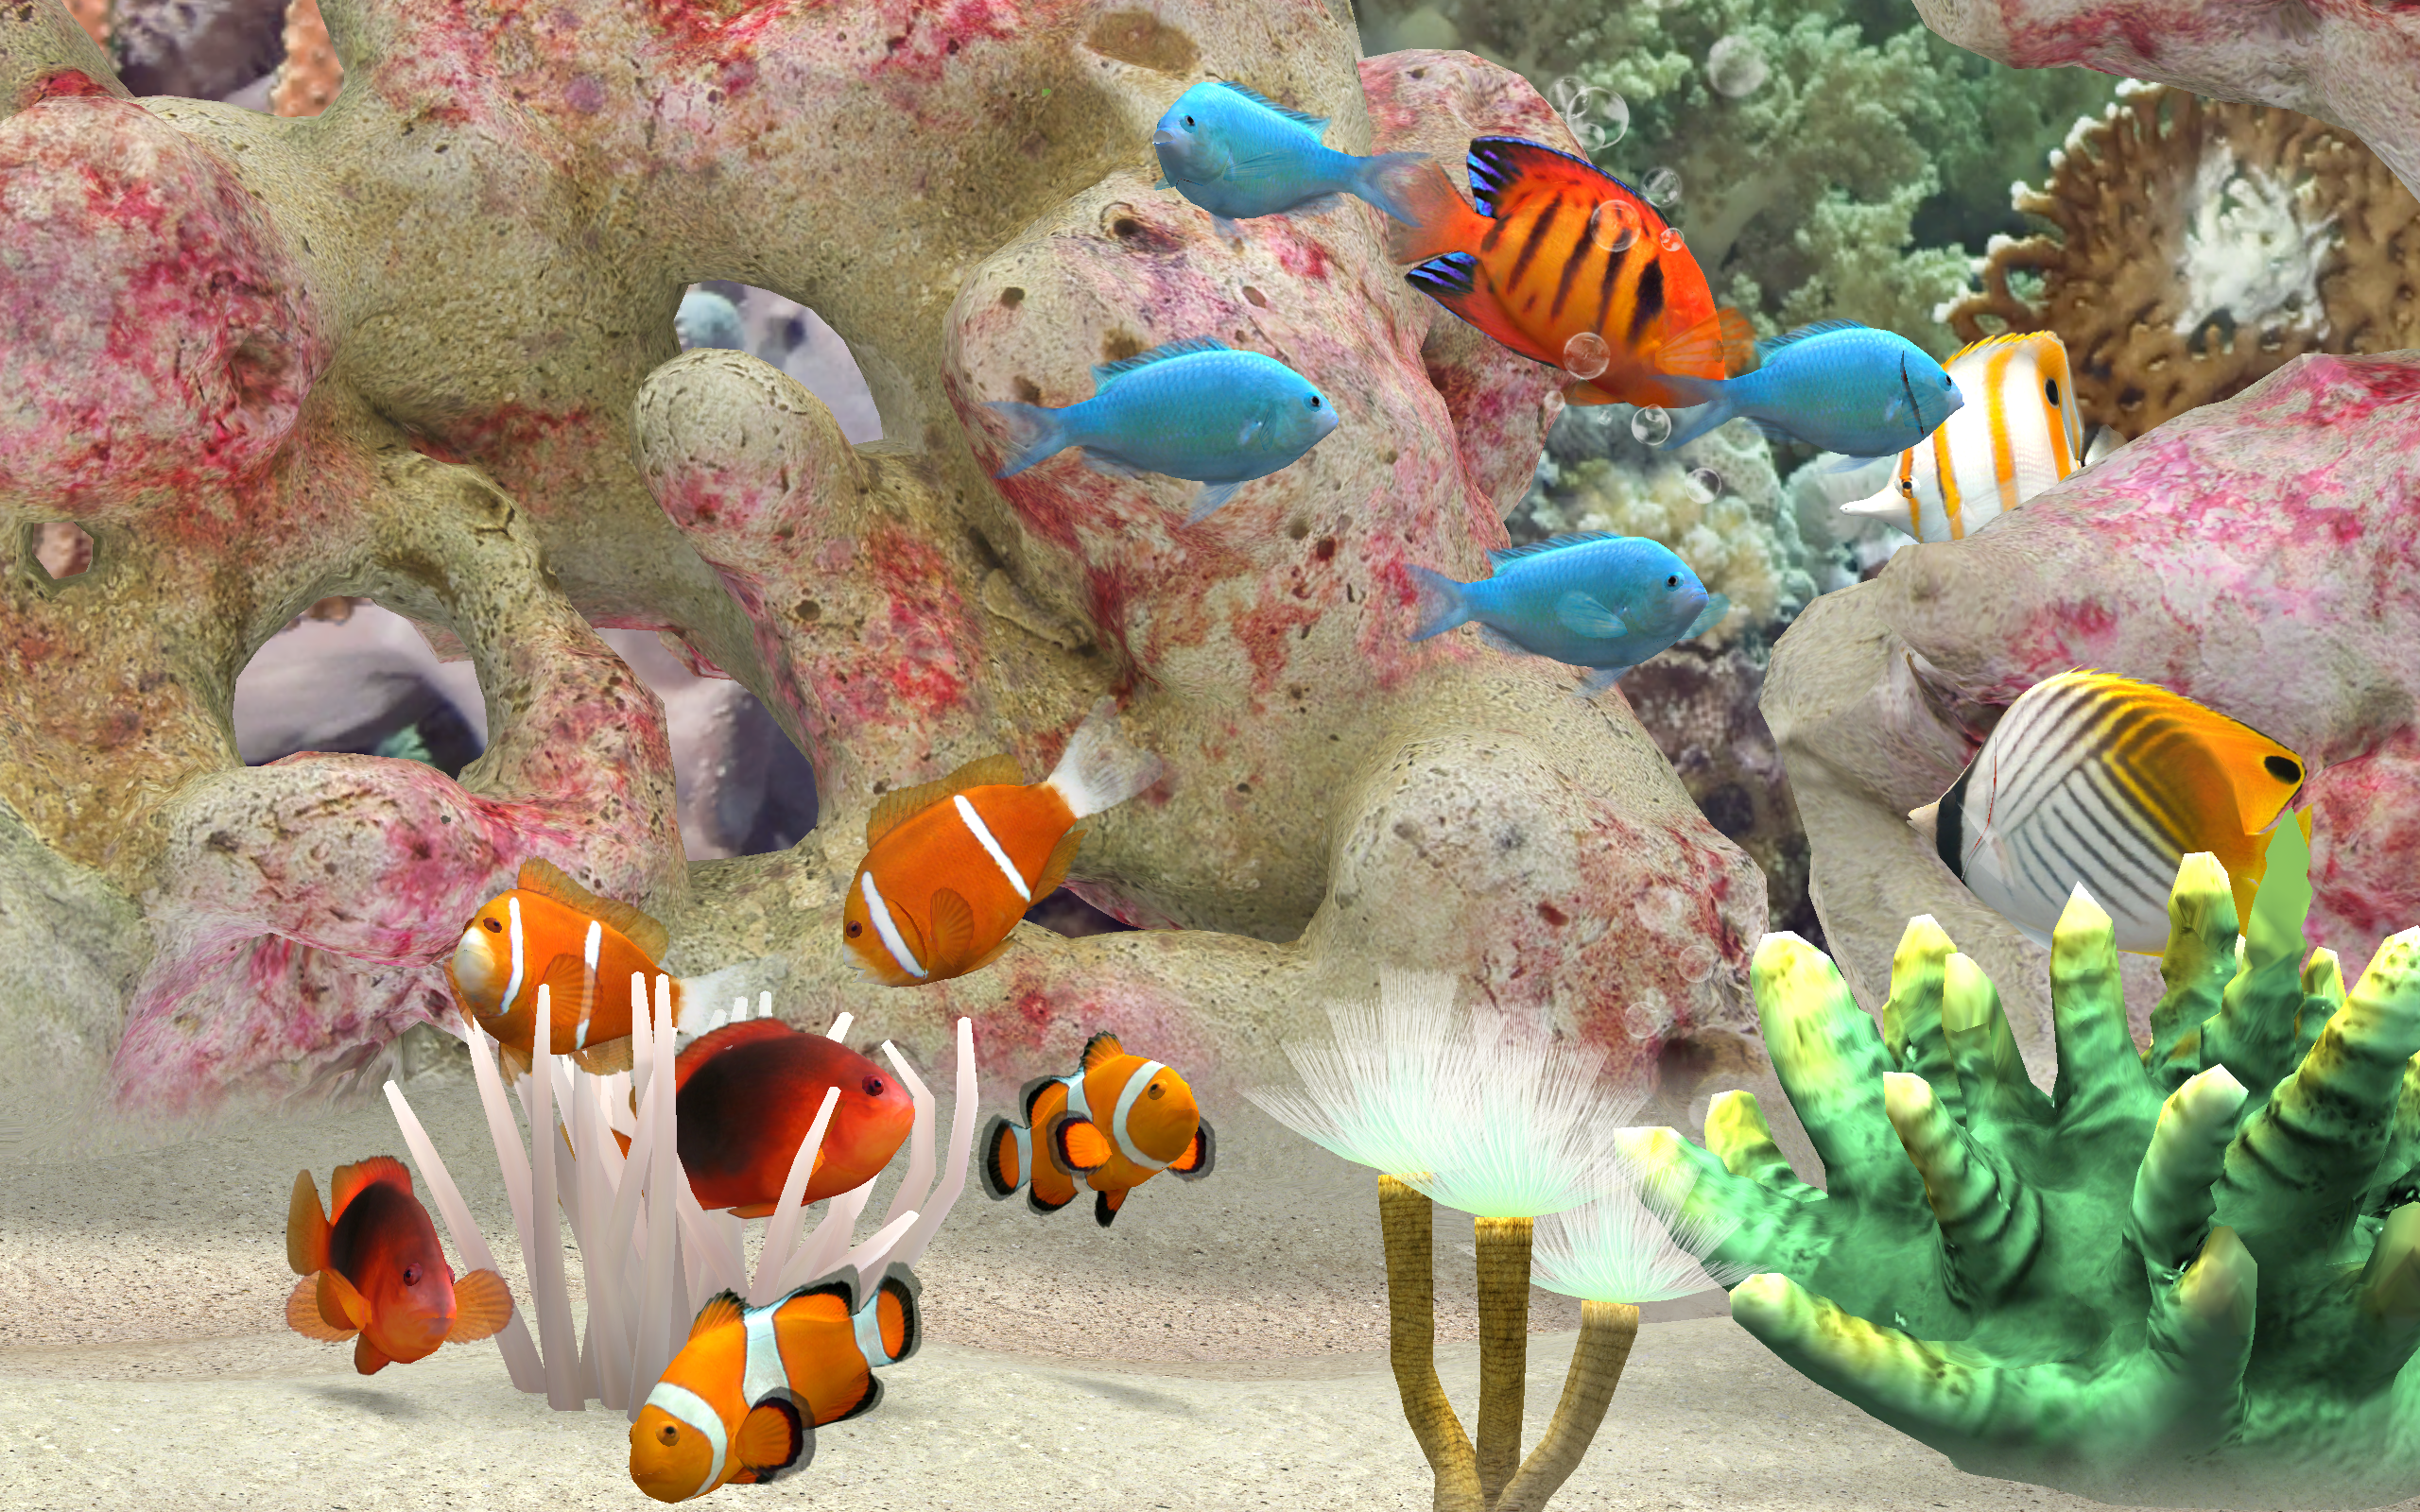 3d marine aquarium free download